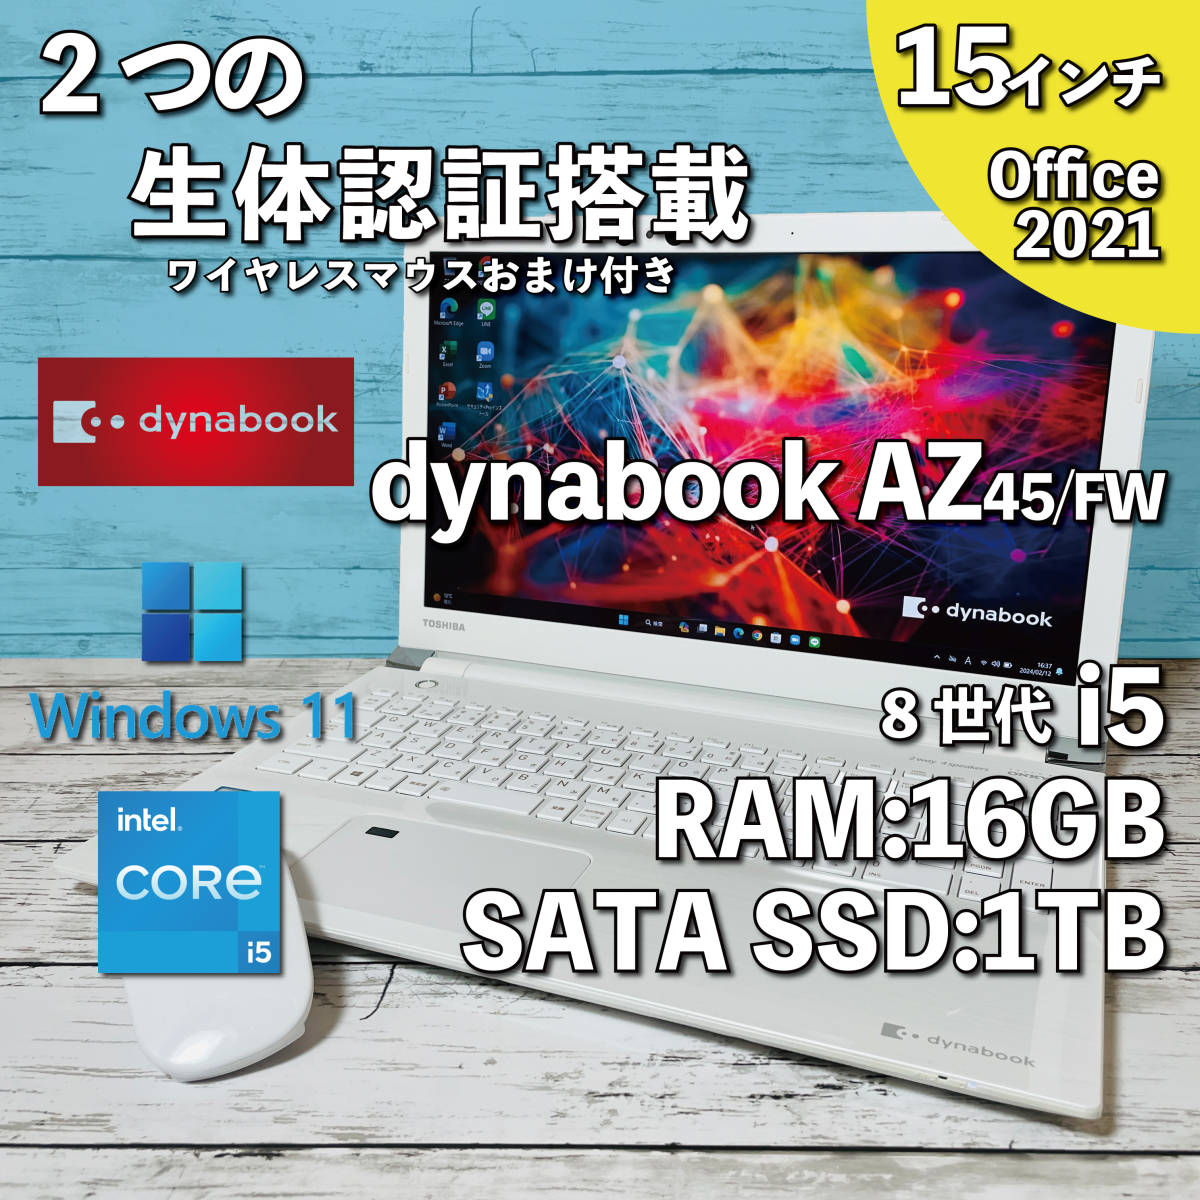 @258【2つの生体認証搭載】dynabook AZ45/FW/ Core i5-8250U/ メモリ16GB / 新品 SSD1TB/ 15.6インチ/ Office2021インストール版の画像1